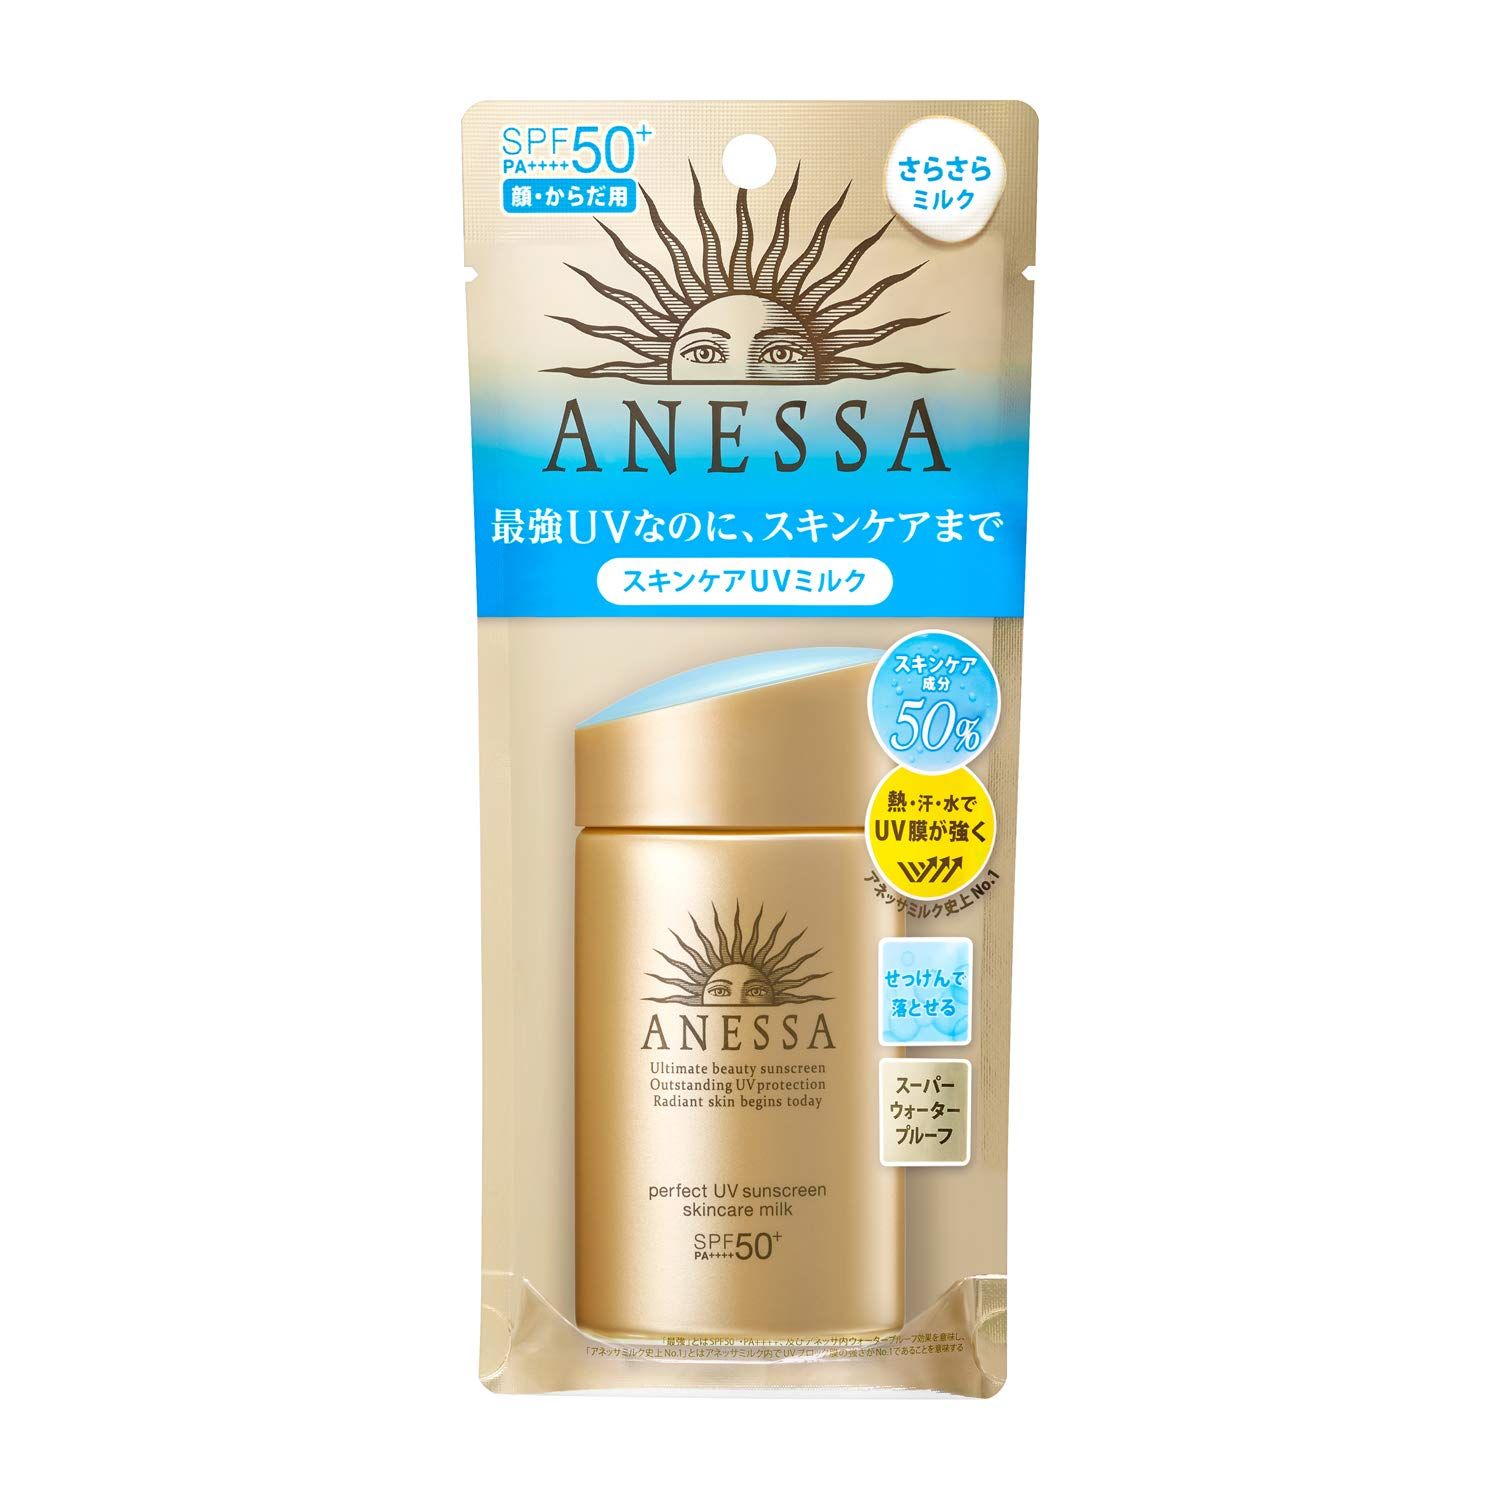 ANESSA Perfect UV Skin Care Milk a Sunscreen Citrus Soap Fragrance 60mL